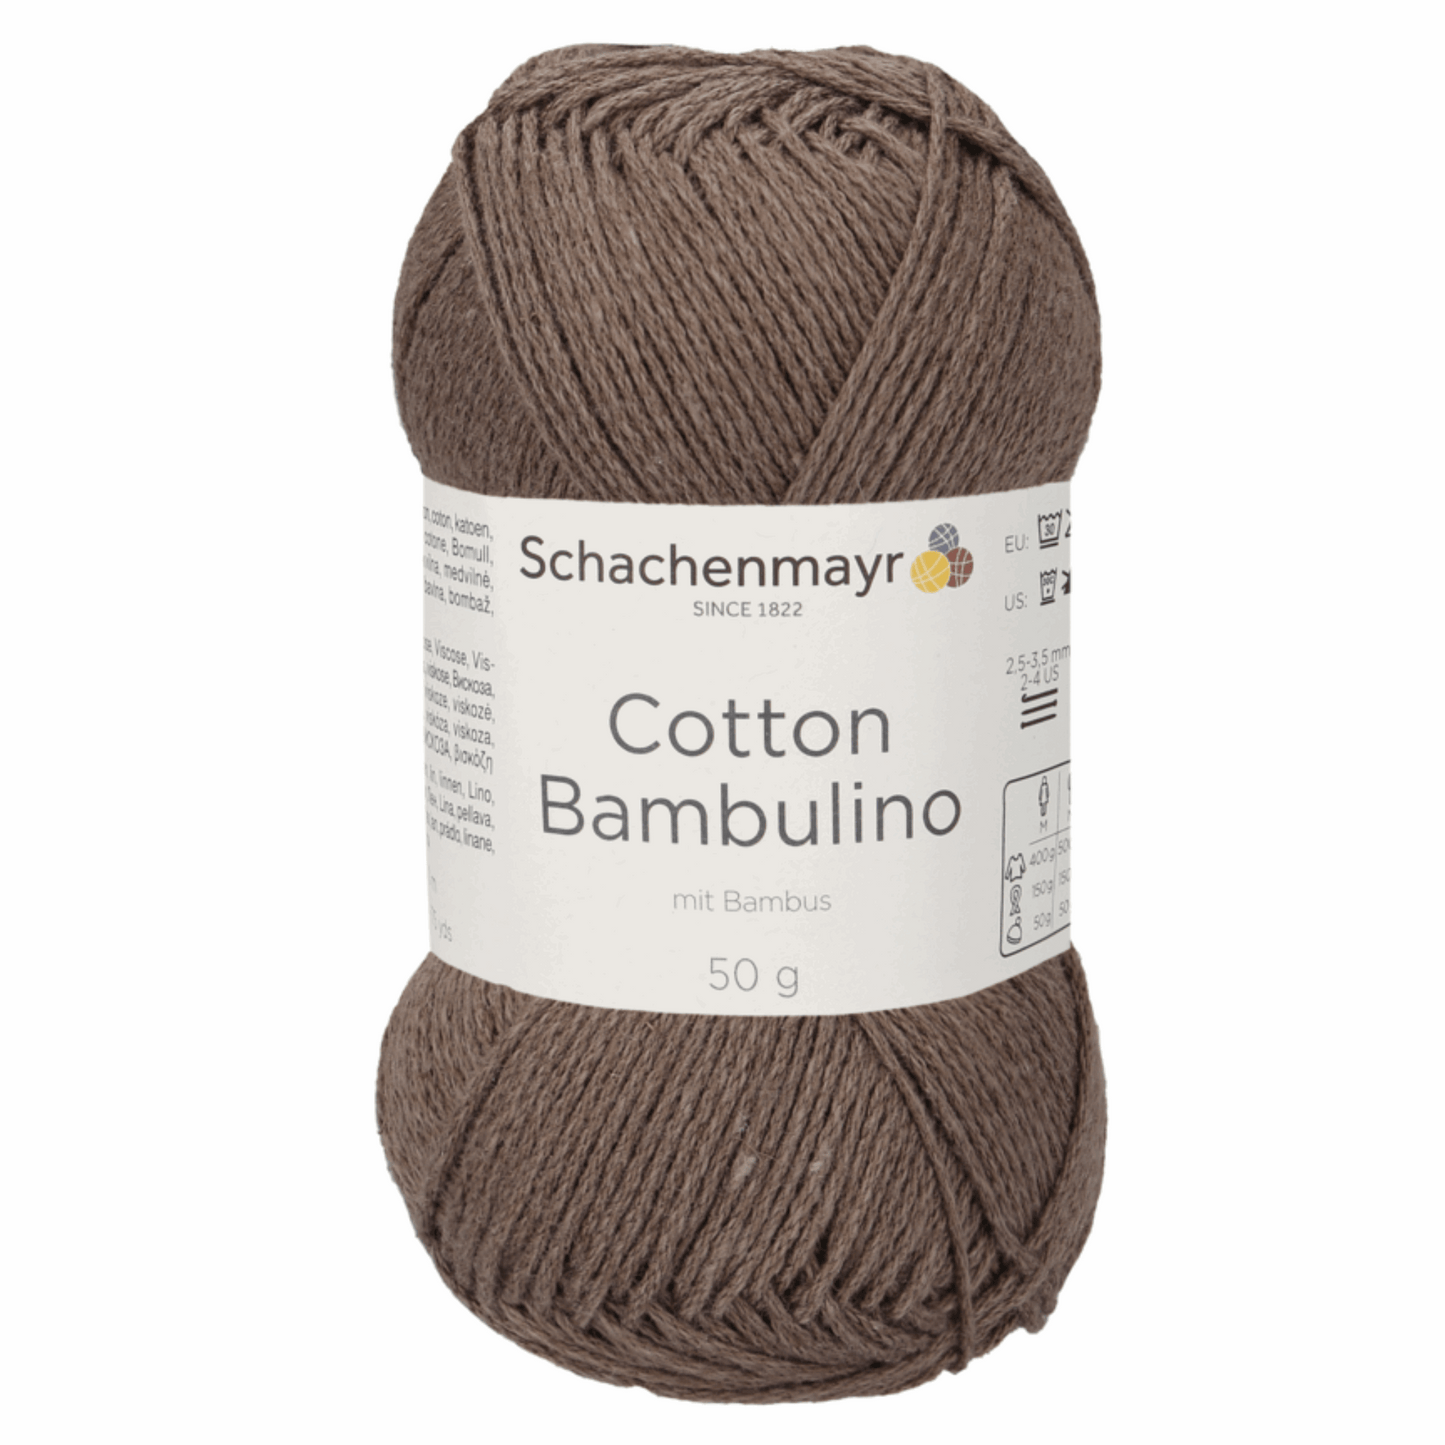 Schachenmayr Cotton Bambulino 50g, 90403, Farbe Taupe 10